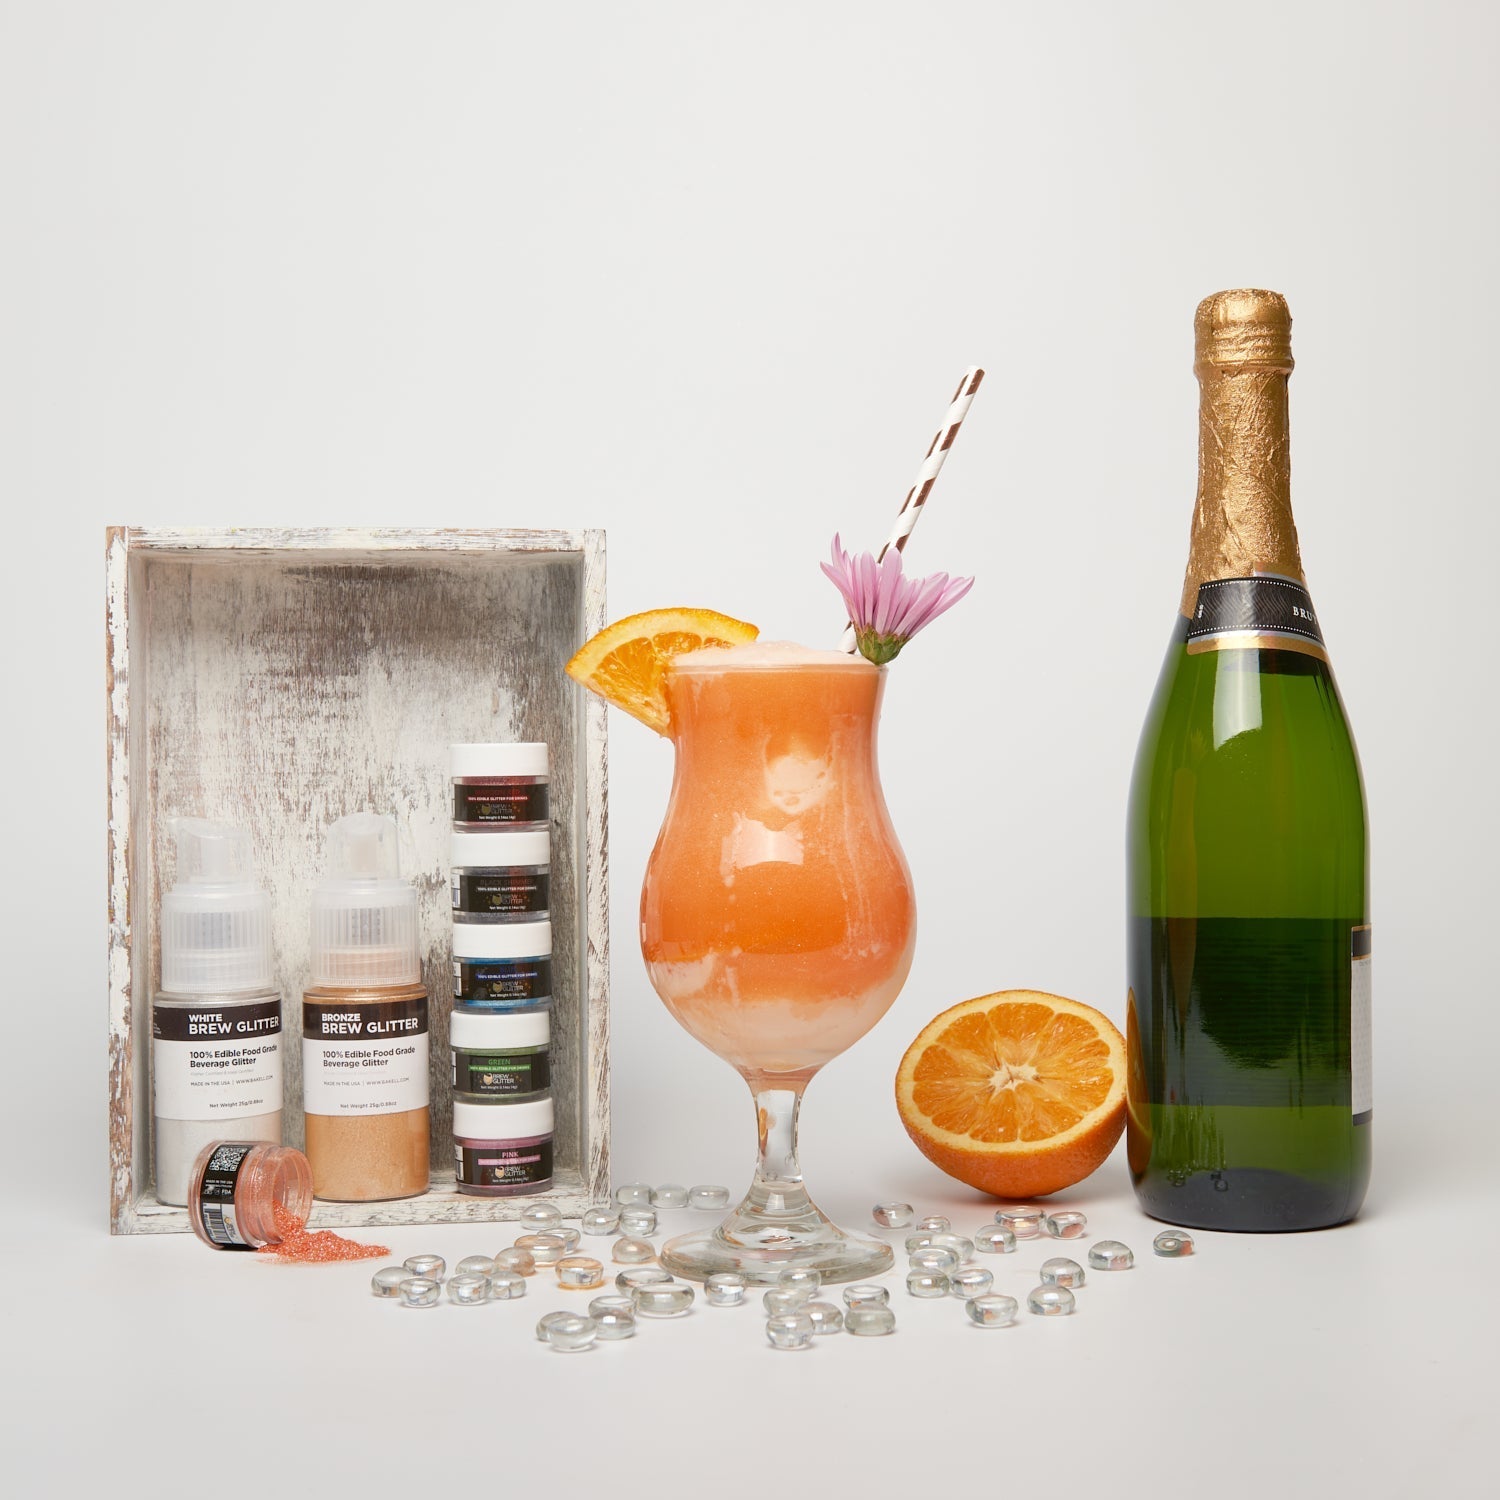 Peach Champagne Glittery Float-Brew Glitter®